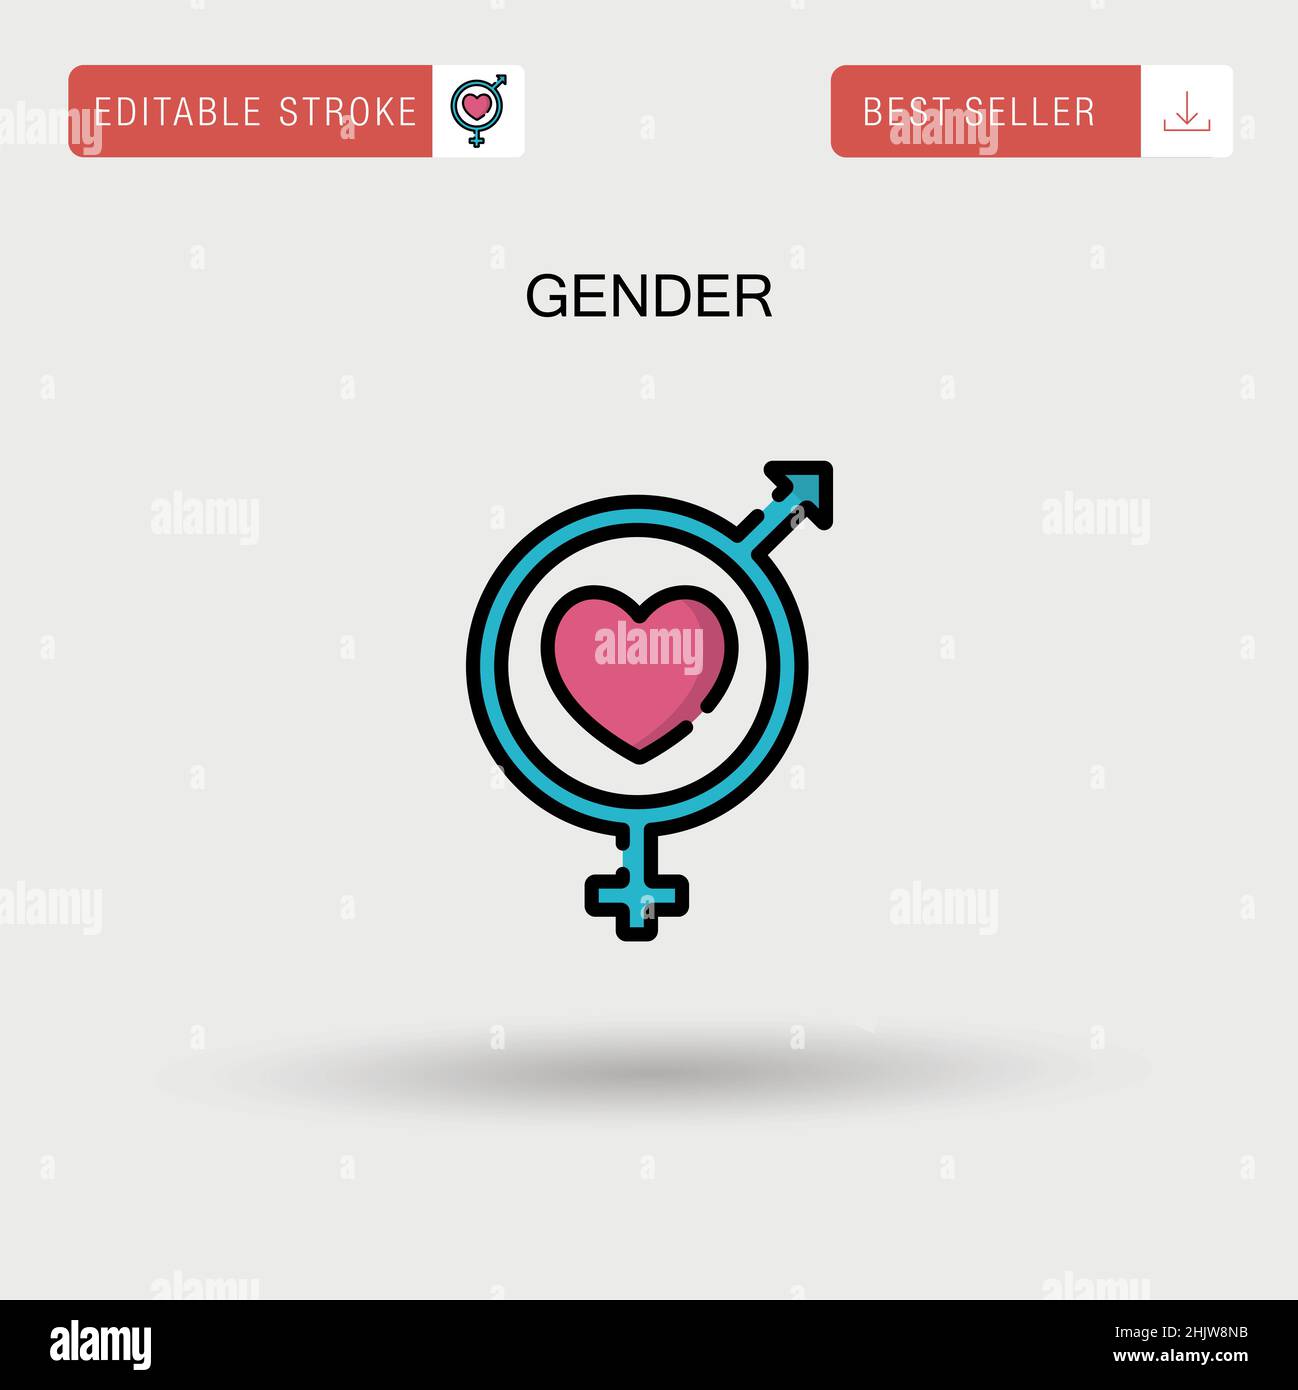 Gender Simple vector icon. Stock Vector